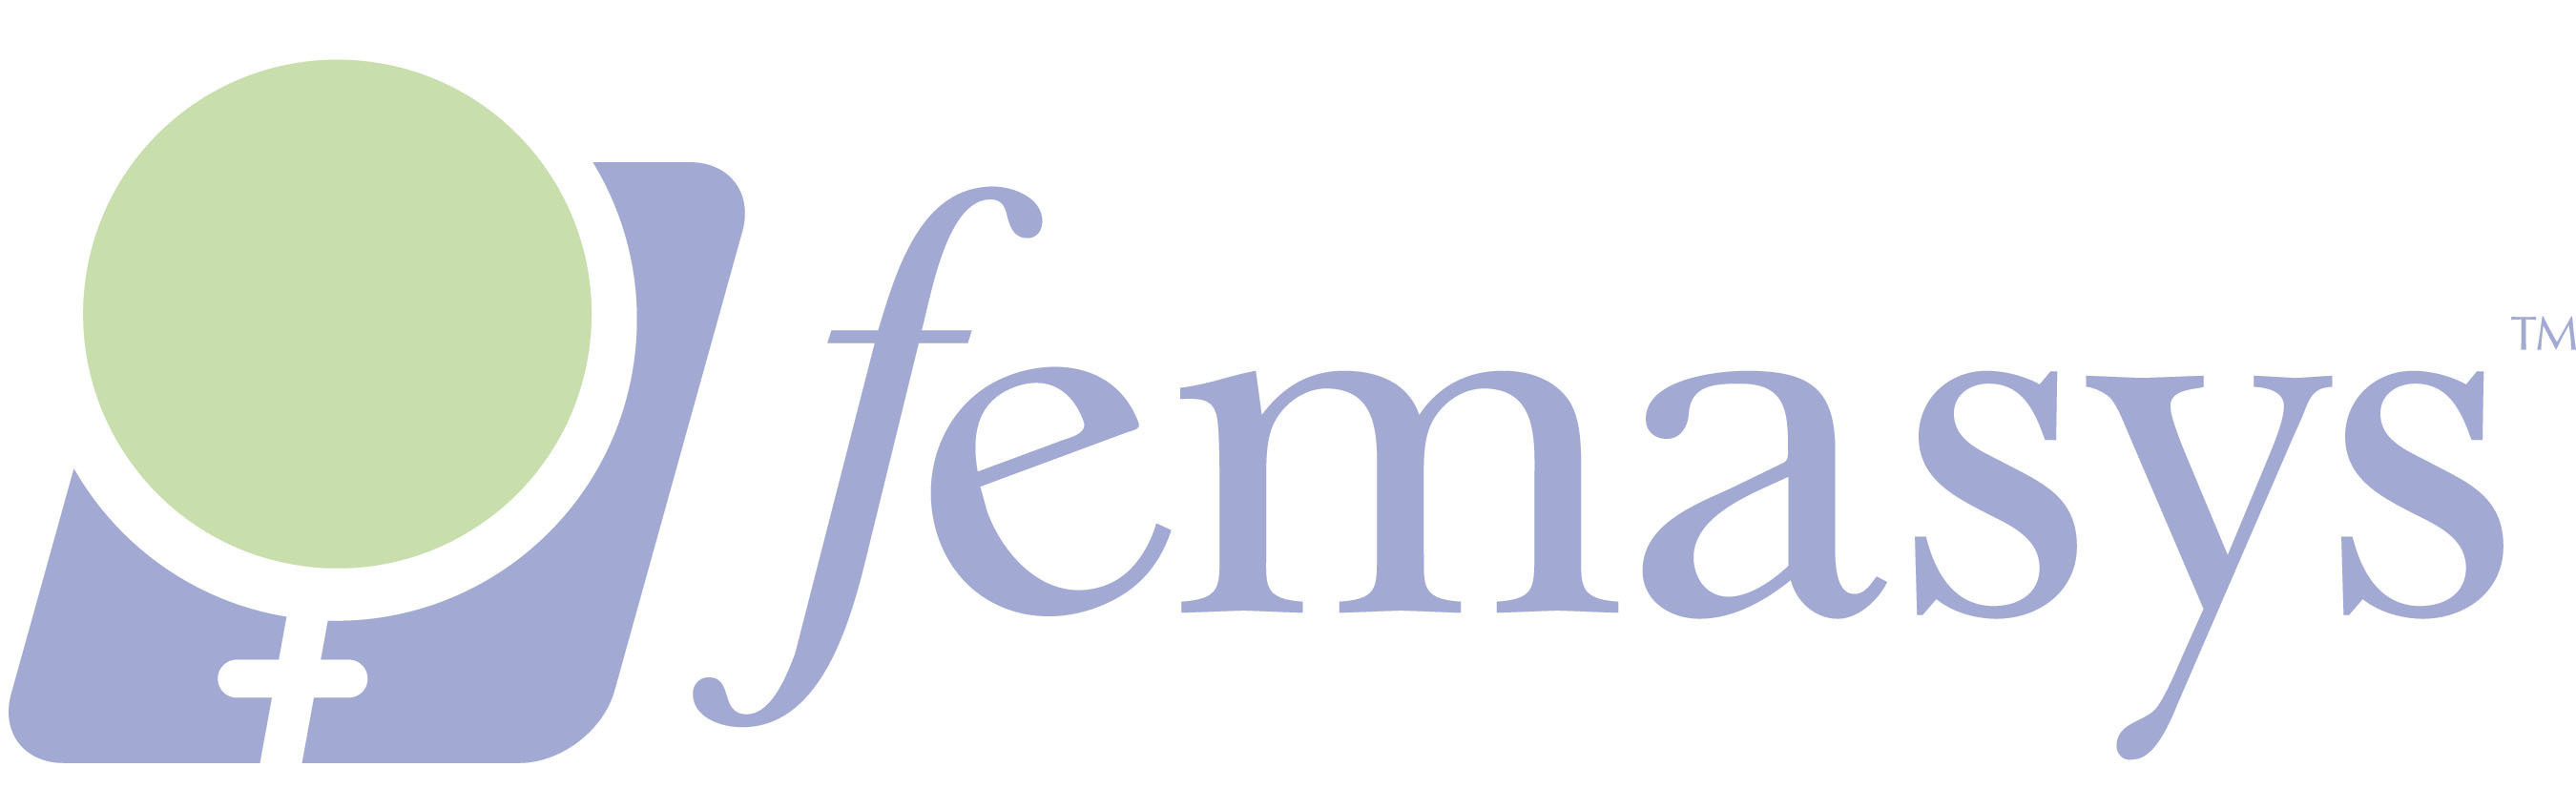 Femasys to Participate in 78th Annual American Society for Reproductive Medicine (ASRM) Scientific Congress